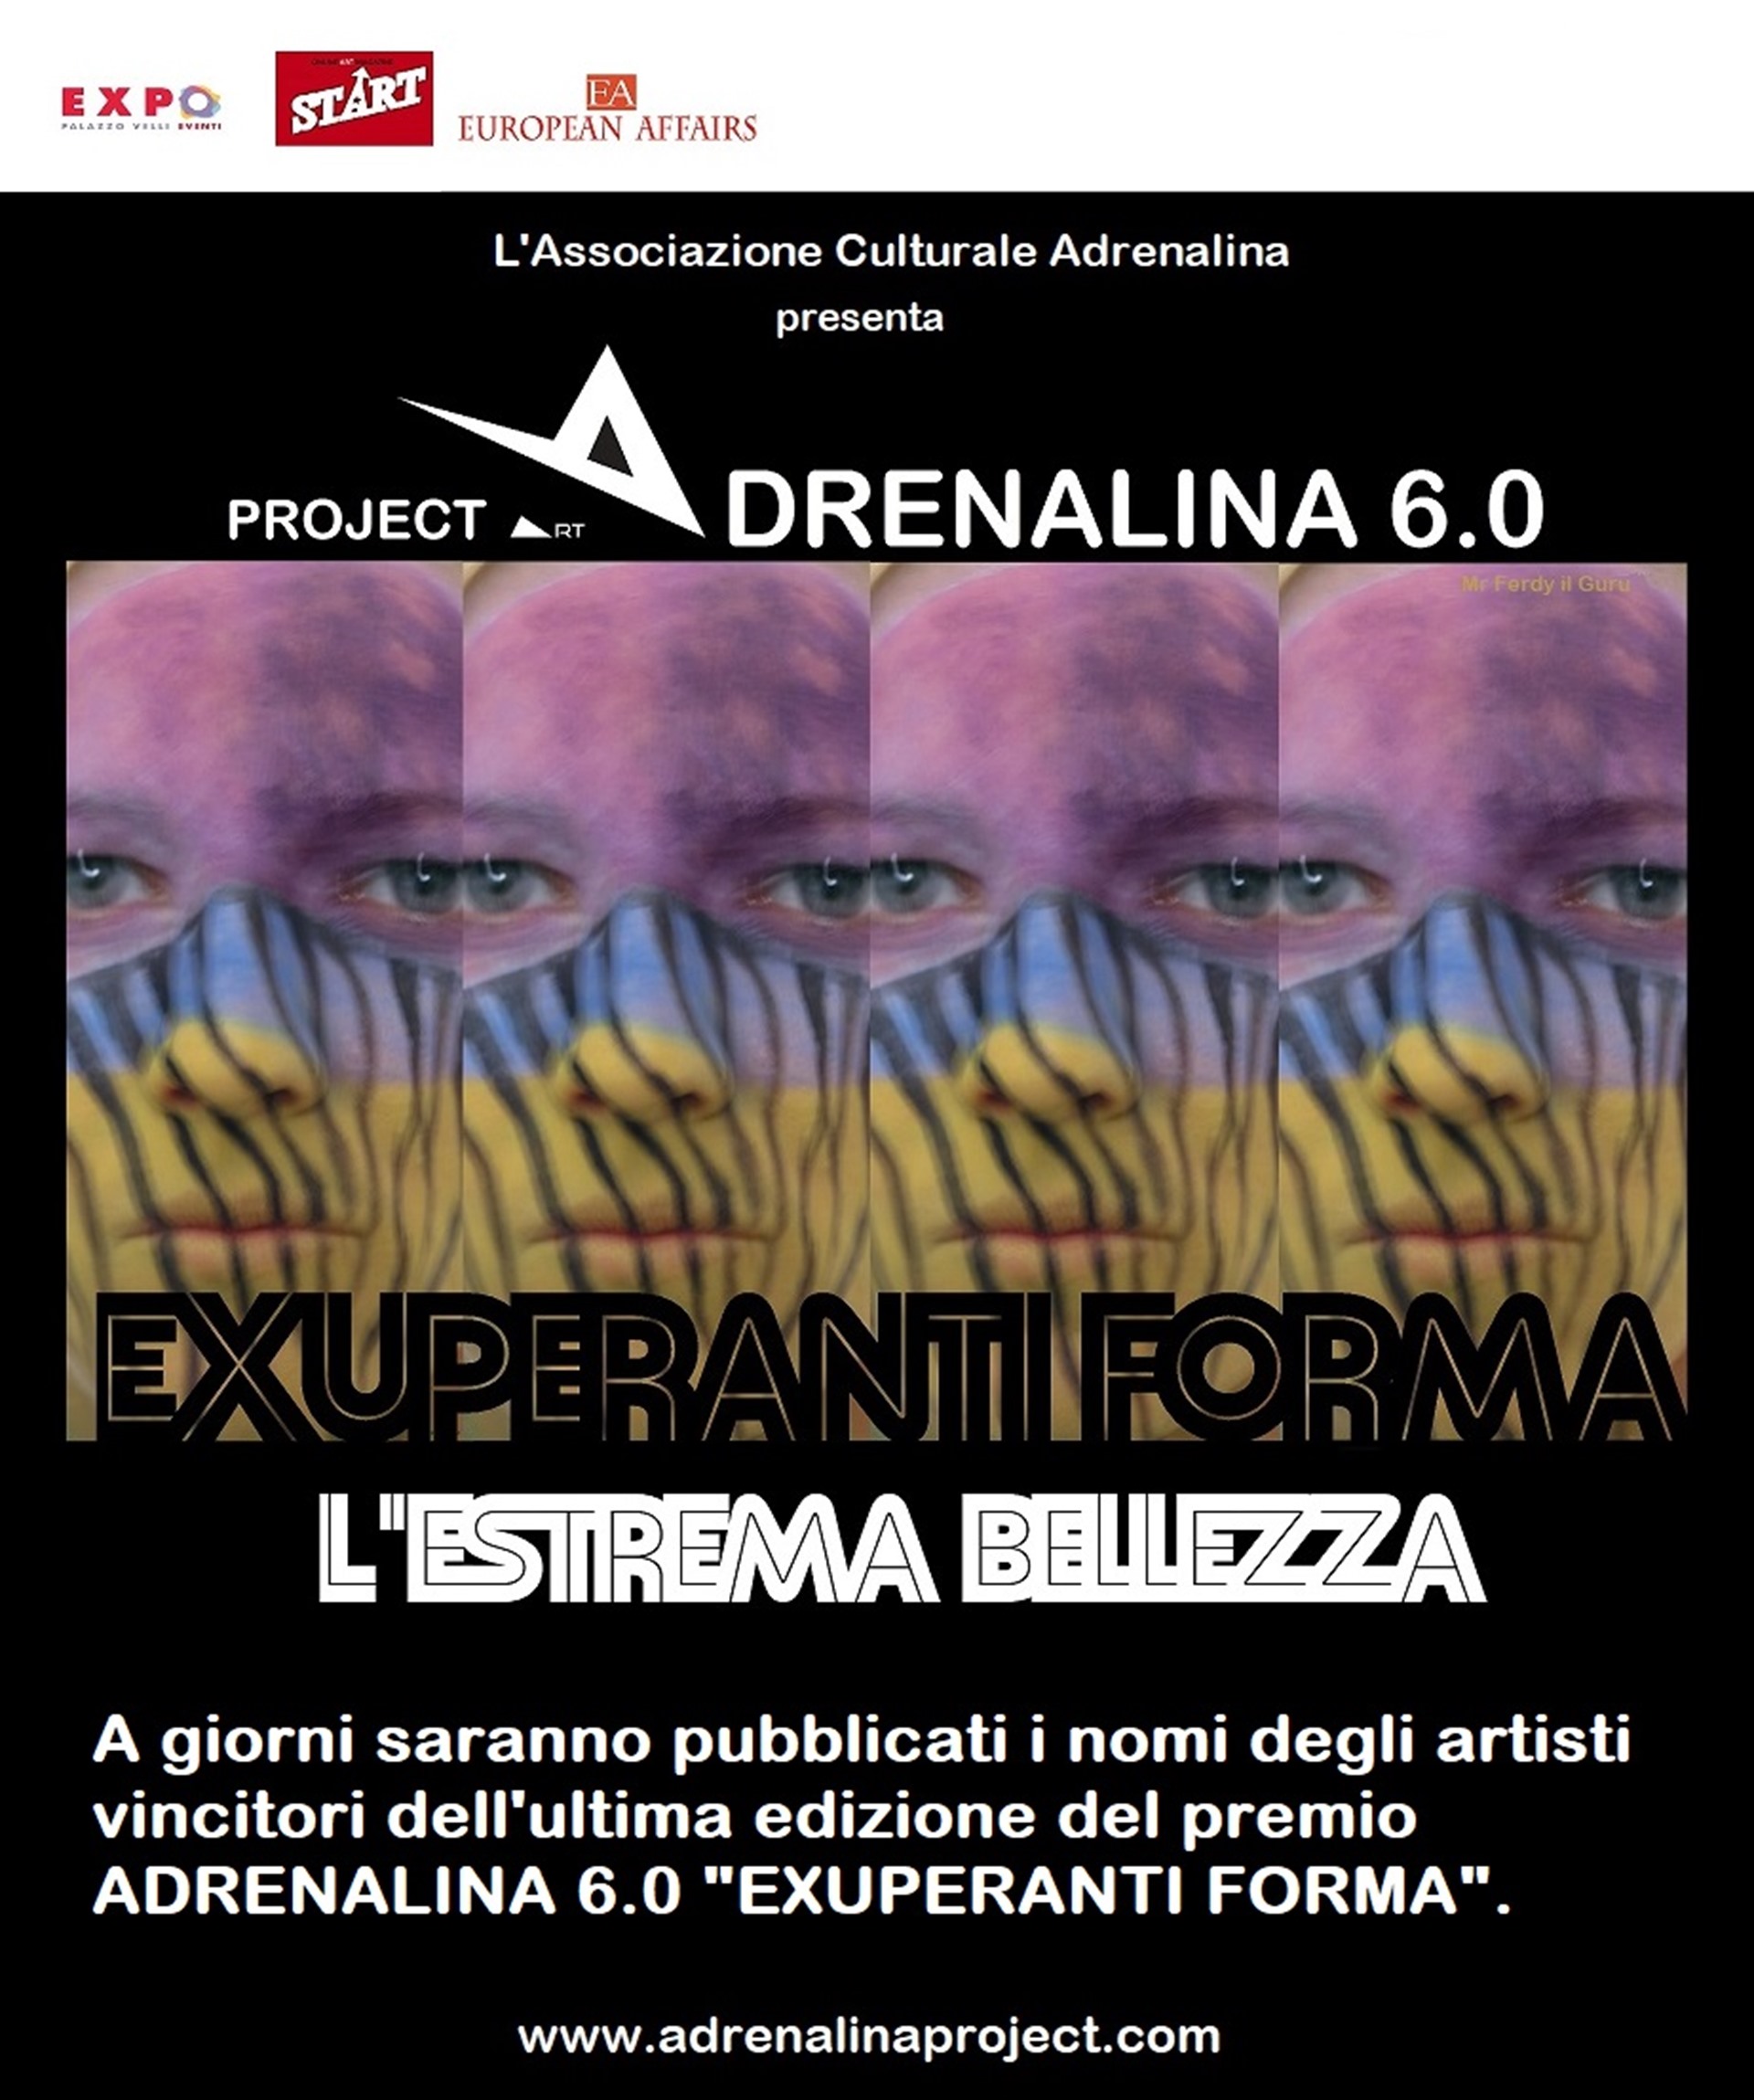 A giorni i nomi degli artisti vincitori ADRENALINA 6.0 "EXUPERANTI FORMA"